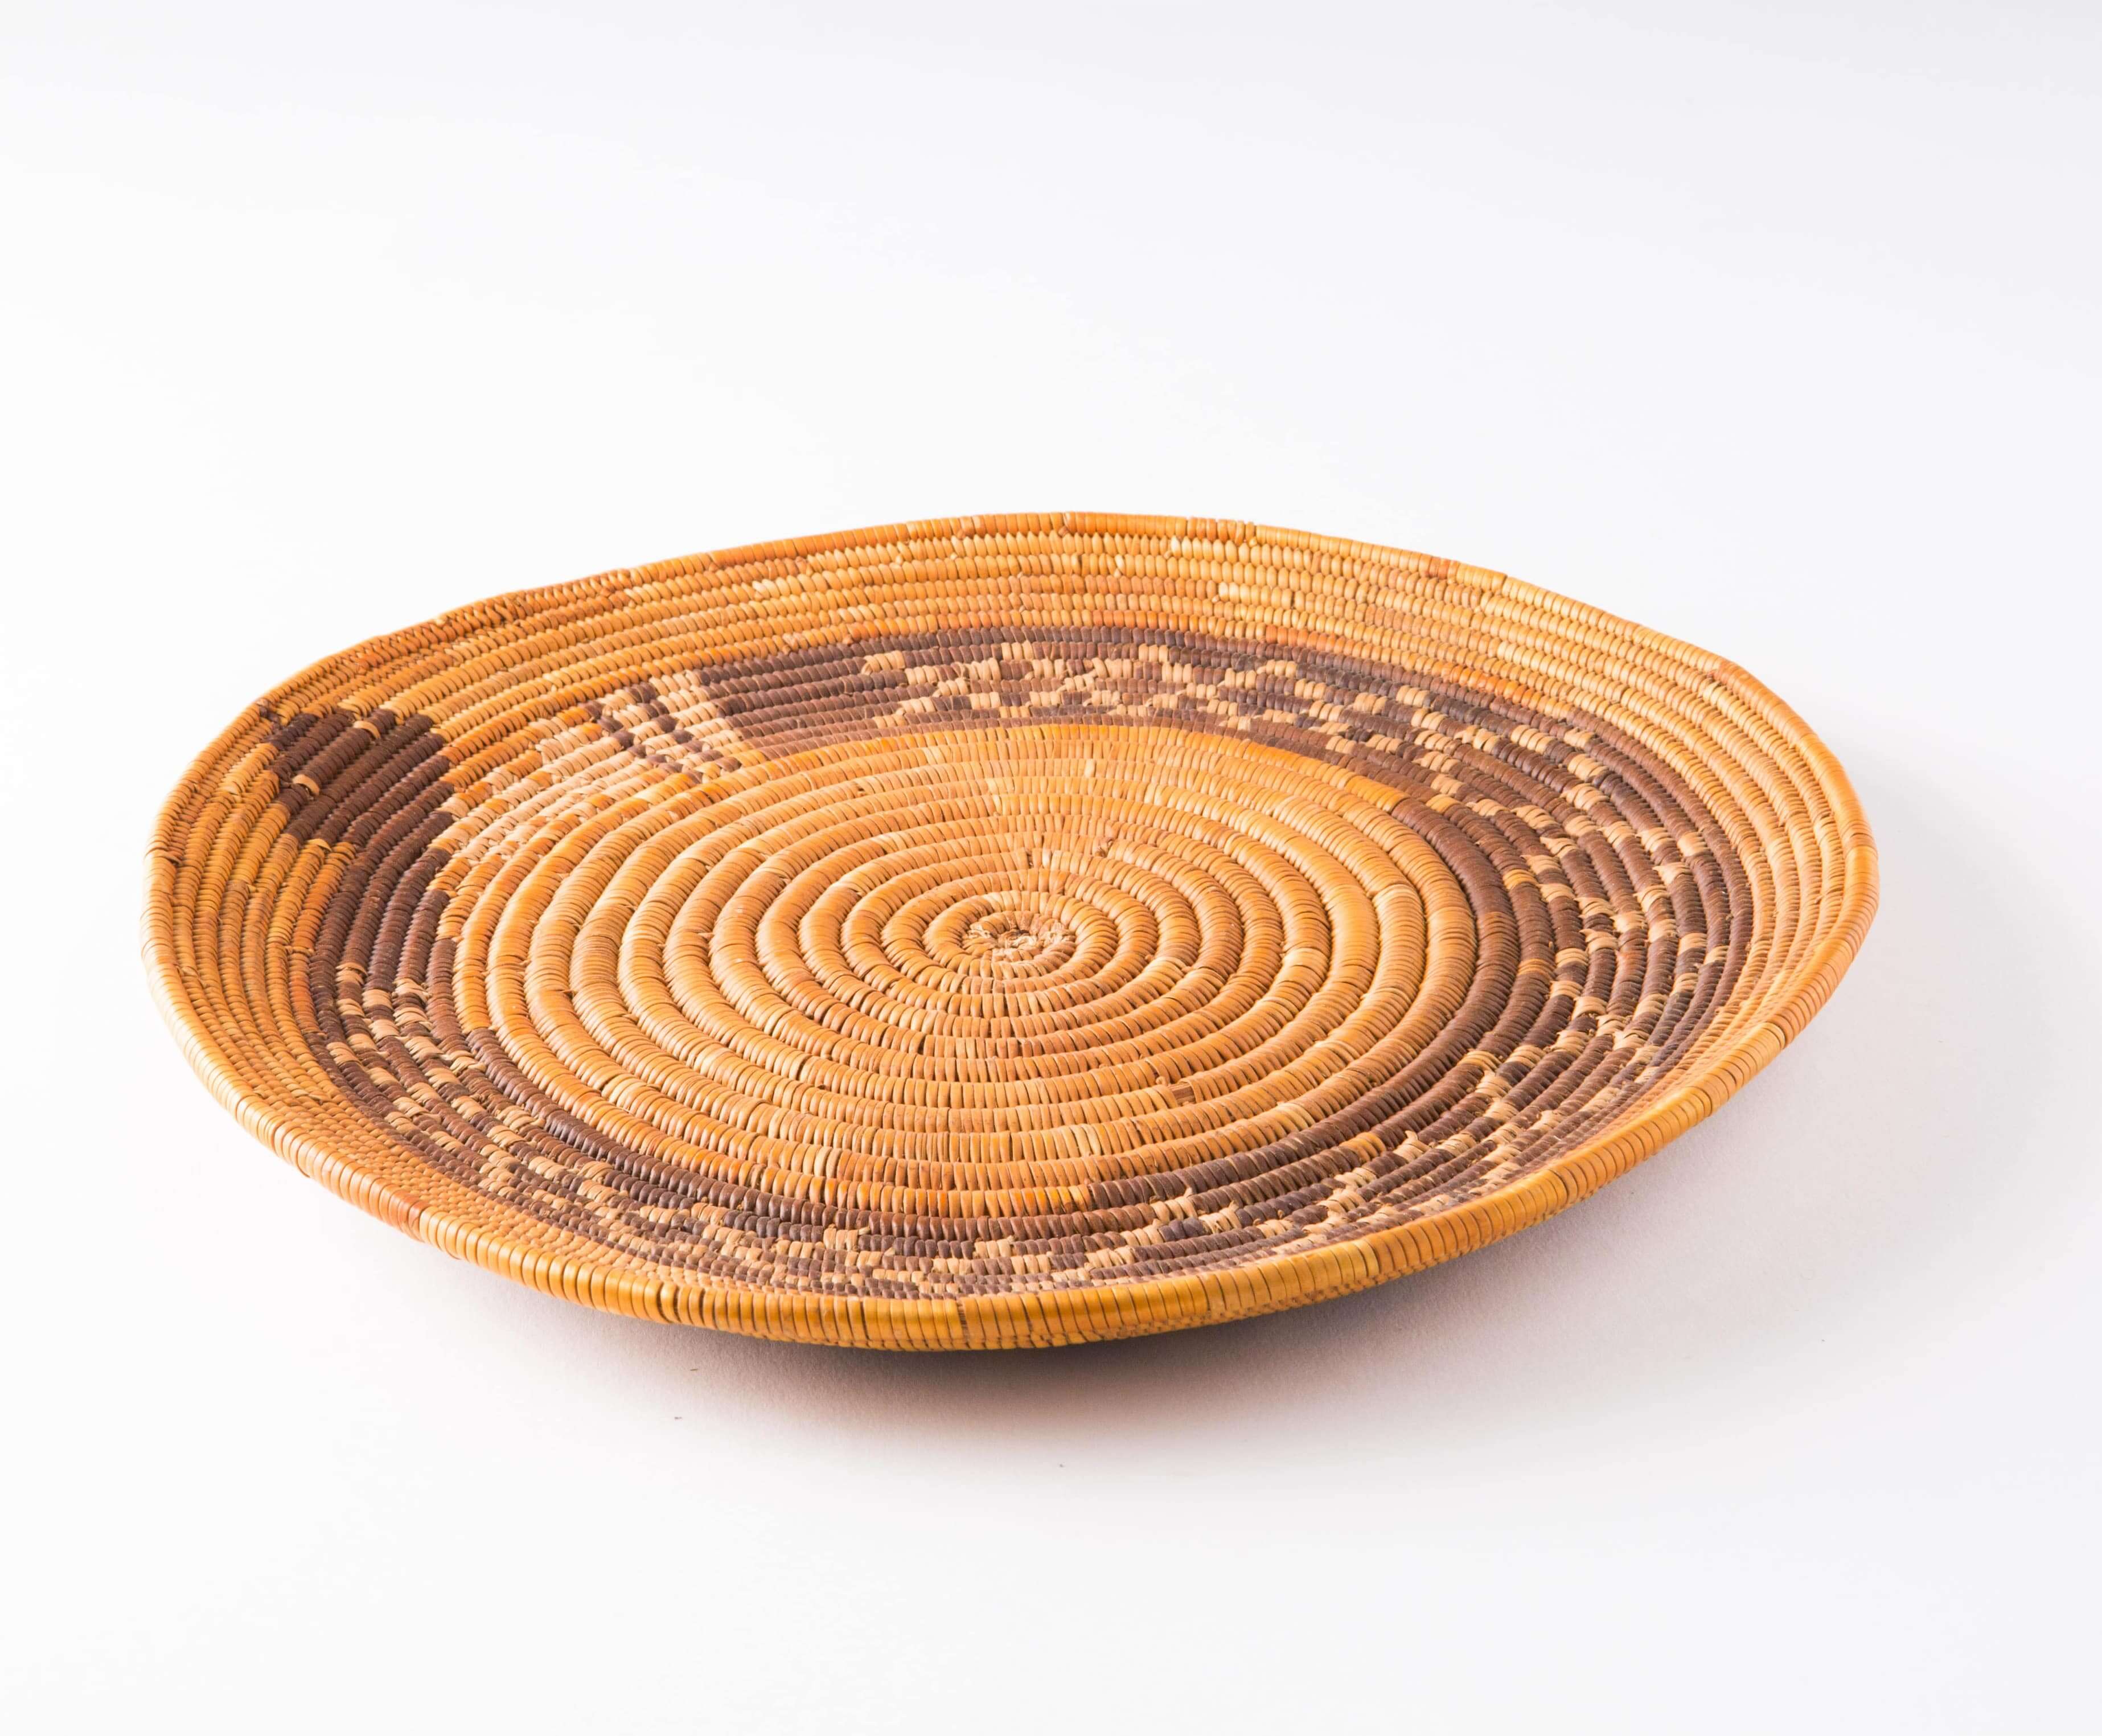 A Cahuilla basket featuring a rattlesnake design.